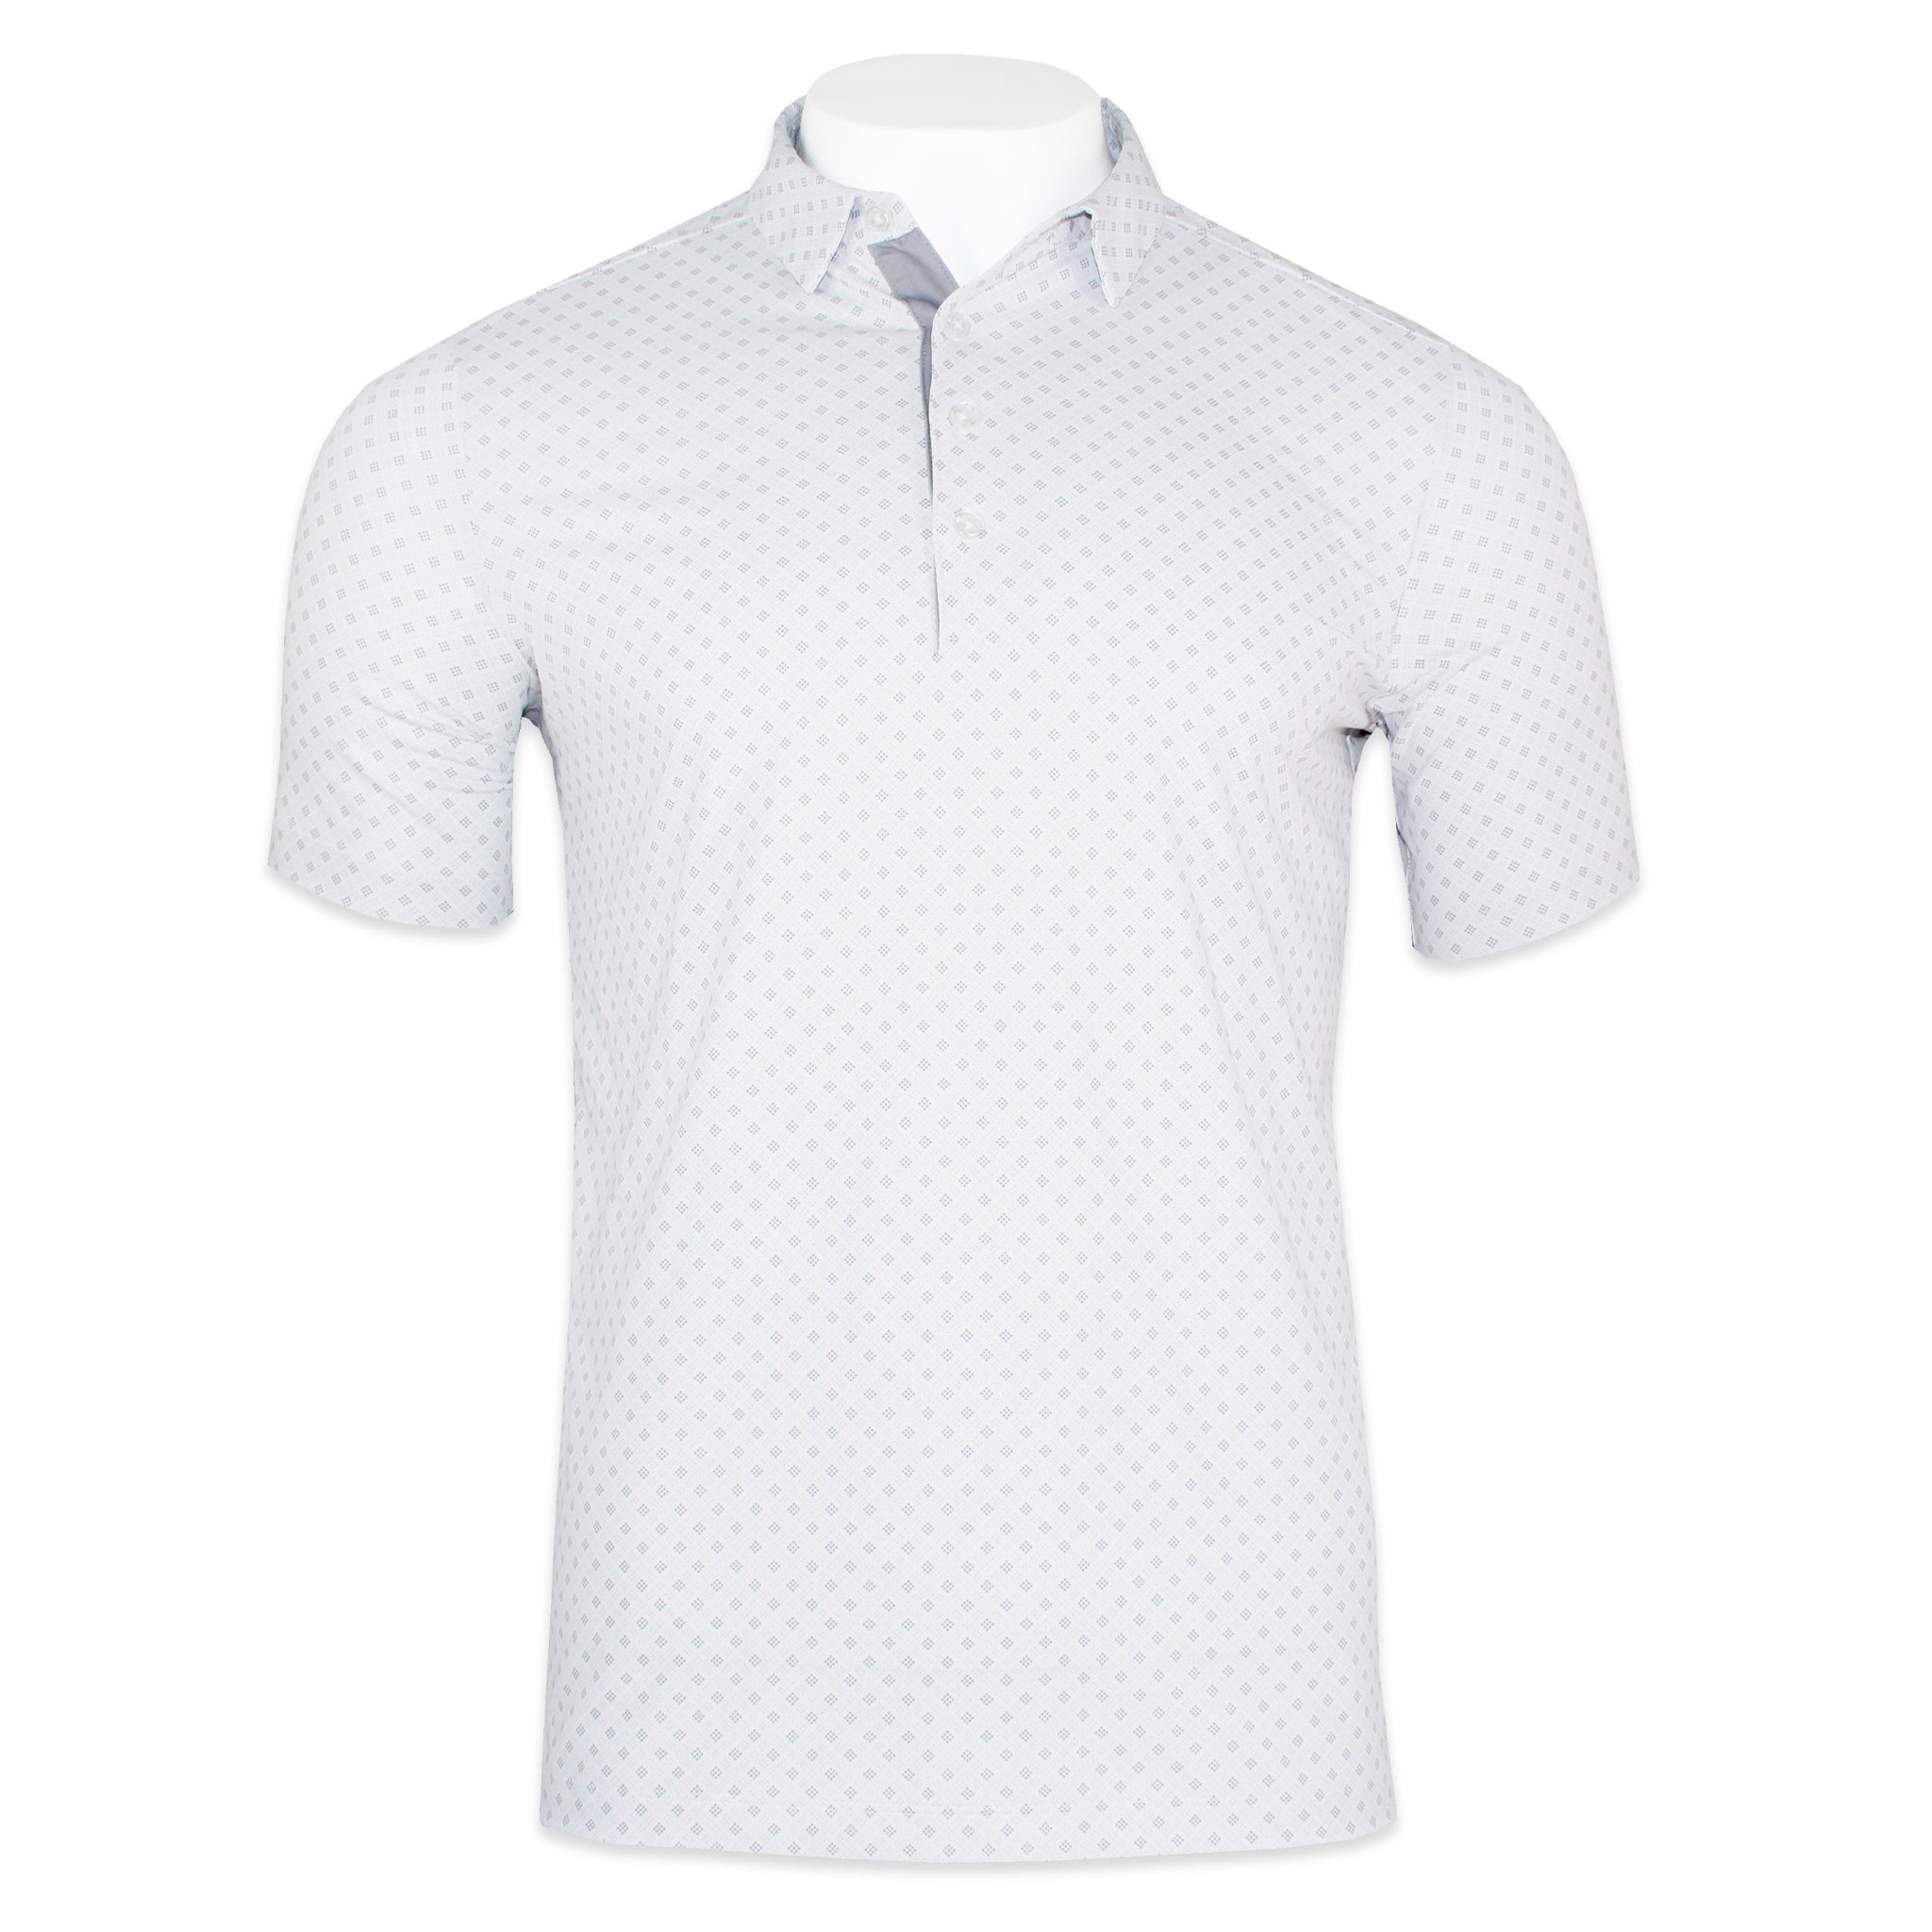 'Patchwork' Four Button Golf Shirt